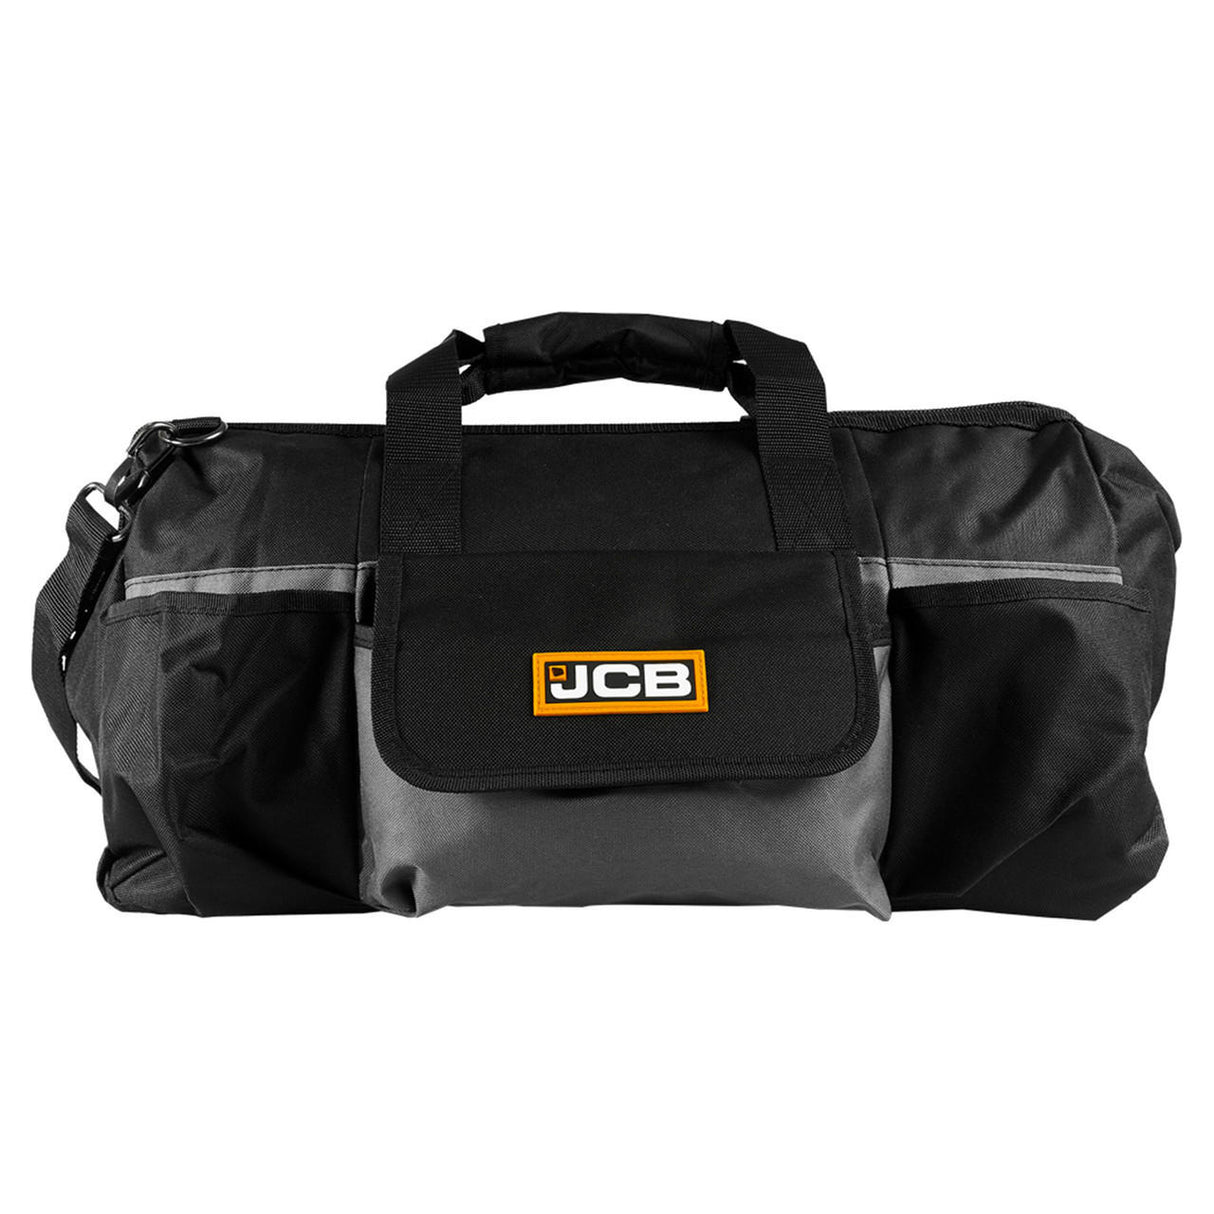 jcb tools JCB 18V Brushless SDS 1x5.0Ah in 20" Kit Bag | 21-18BLRH-5X-BG